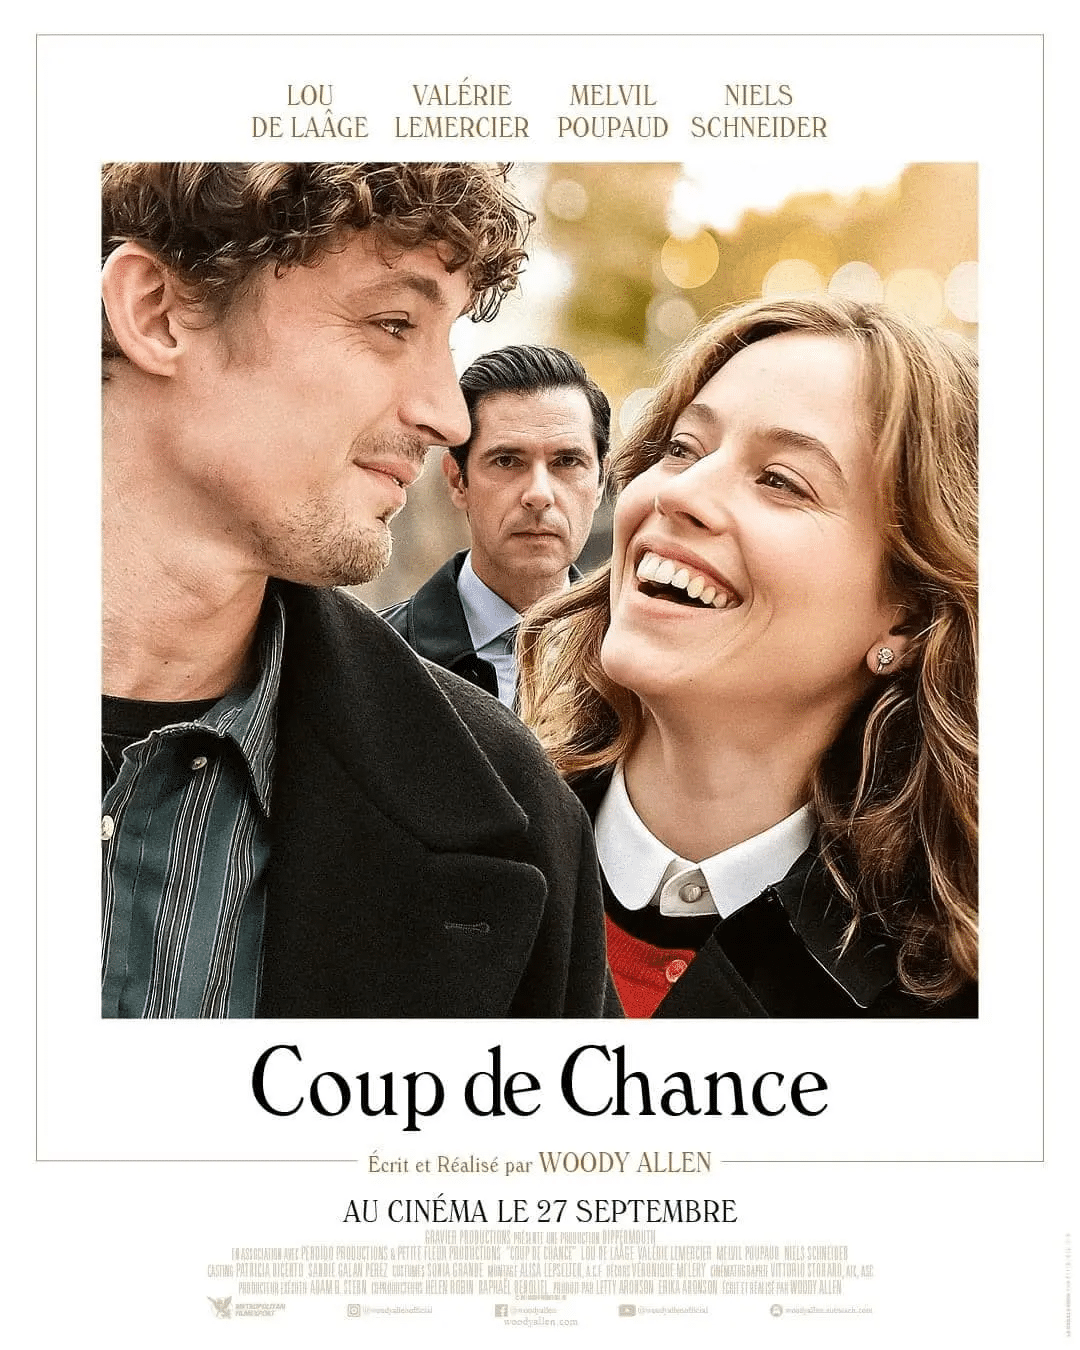 Coup de Chance poster